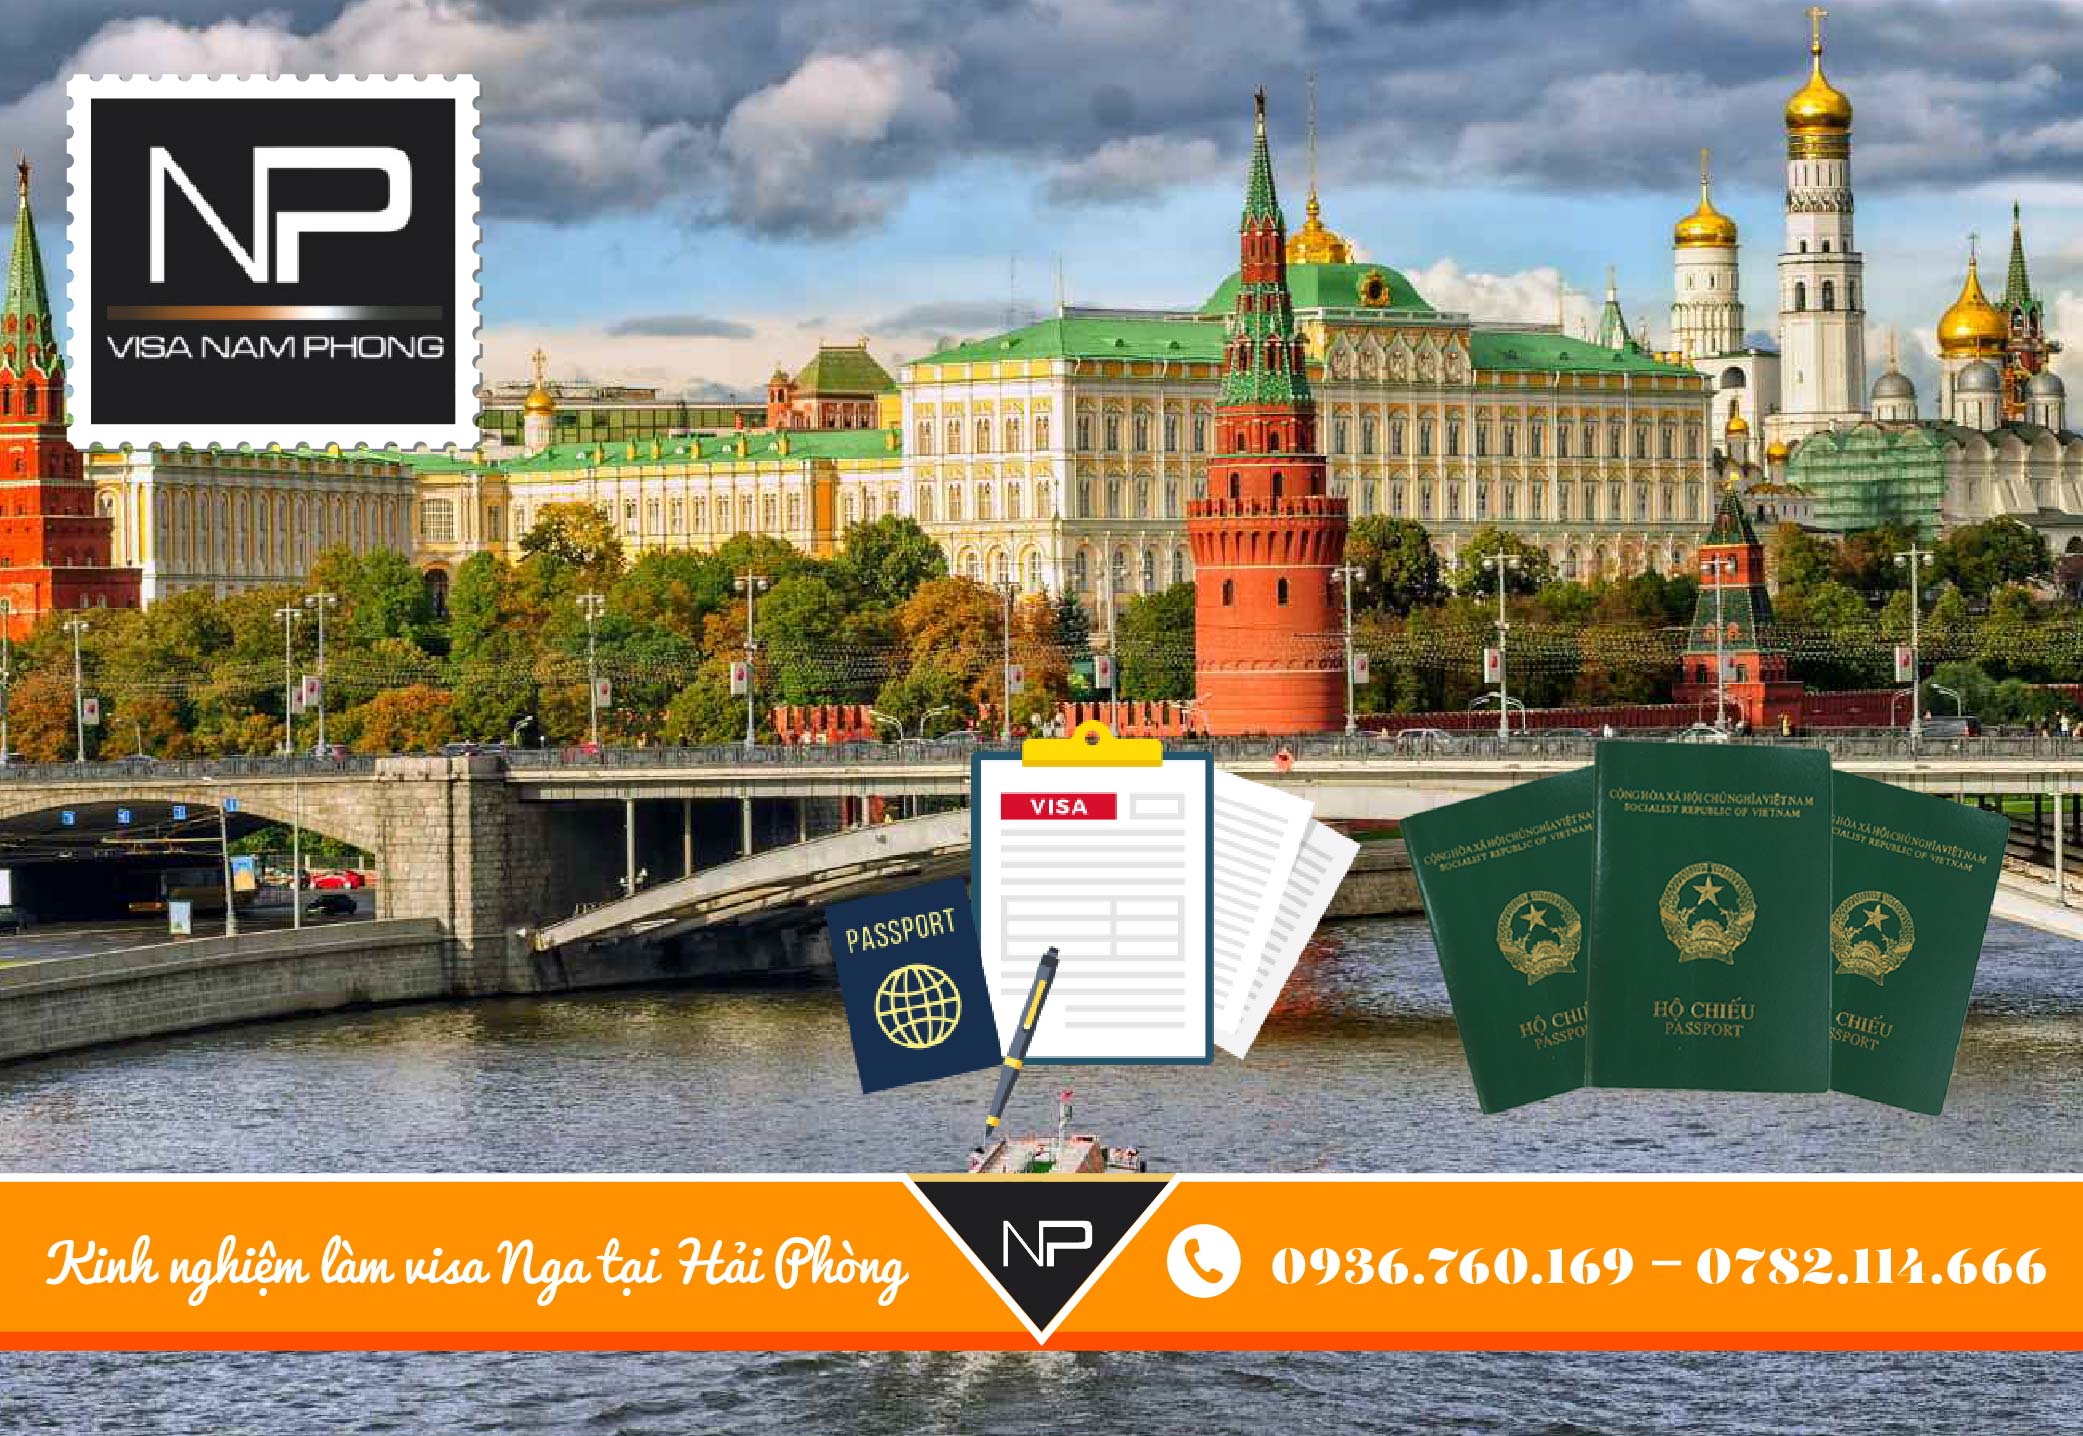 Kinh nghiệm làm visa Nga tại Hải Phòng